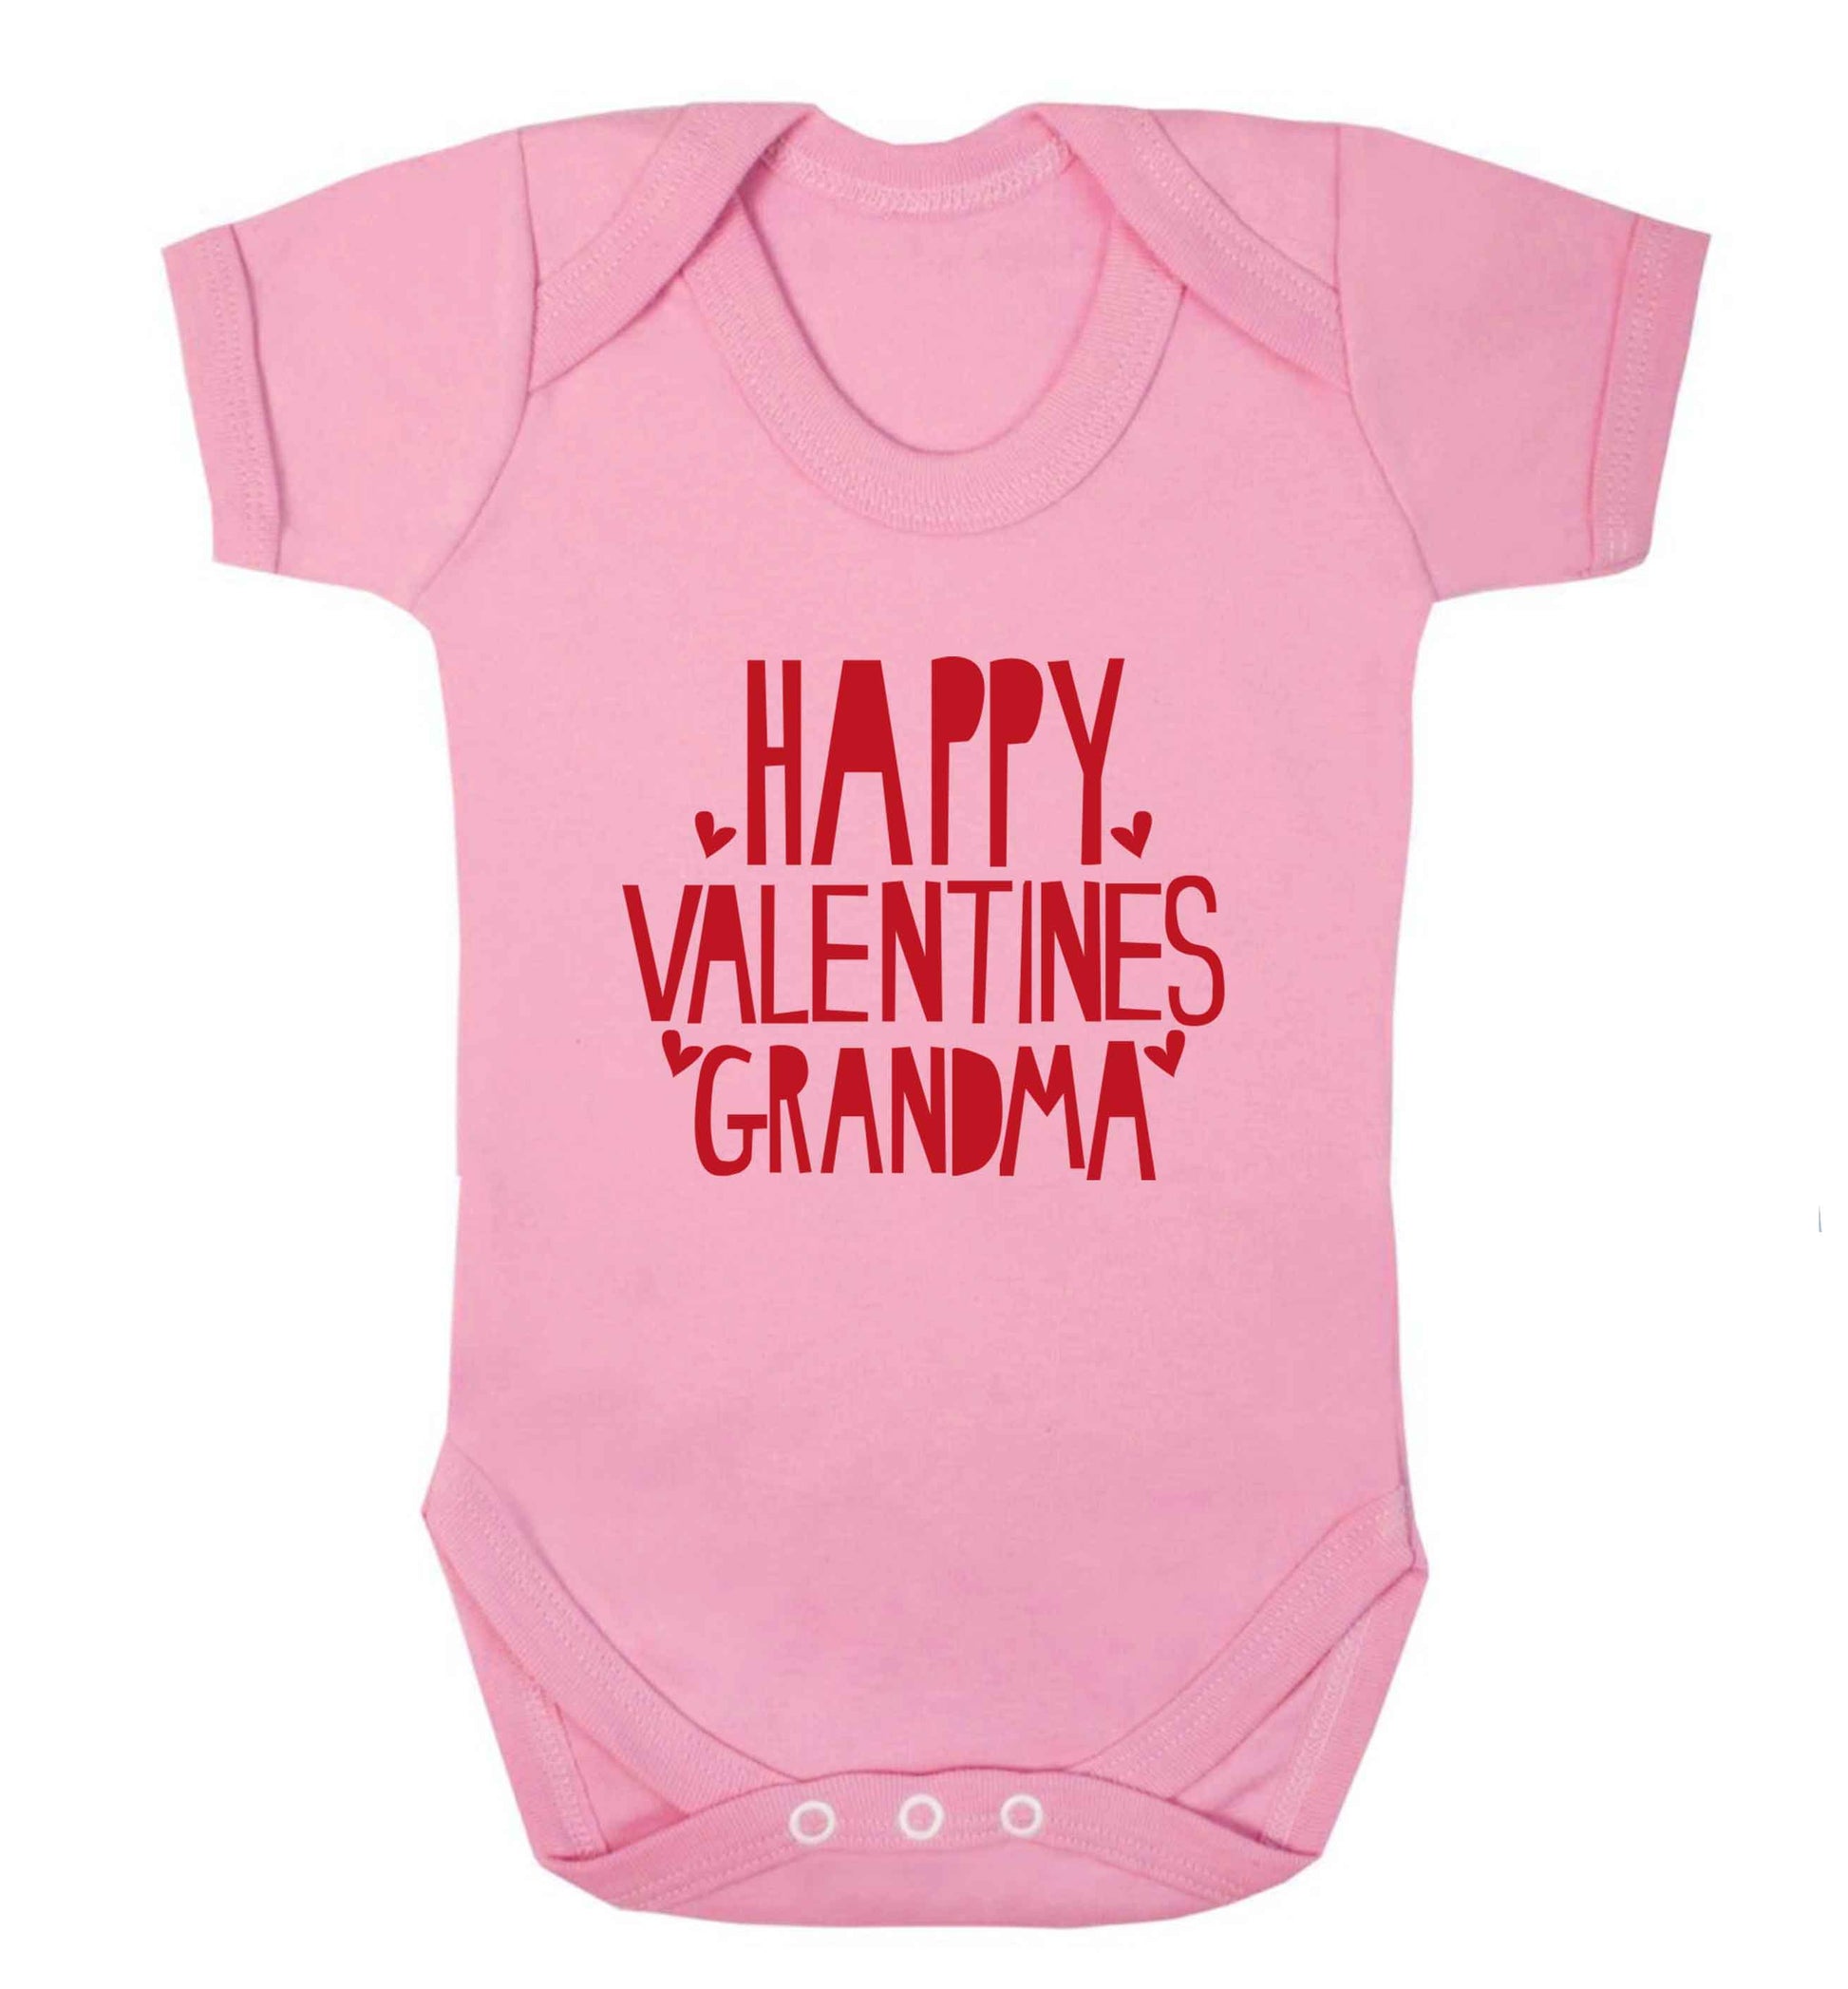 Happy valentines grandma baby vest pale pink 18-24 months